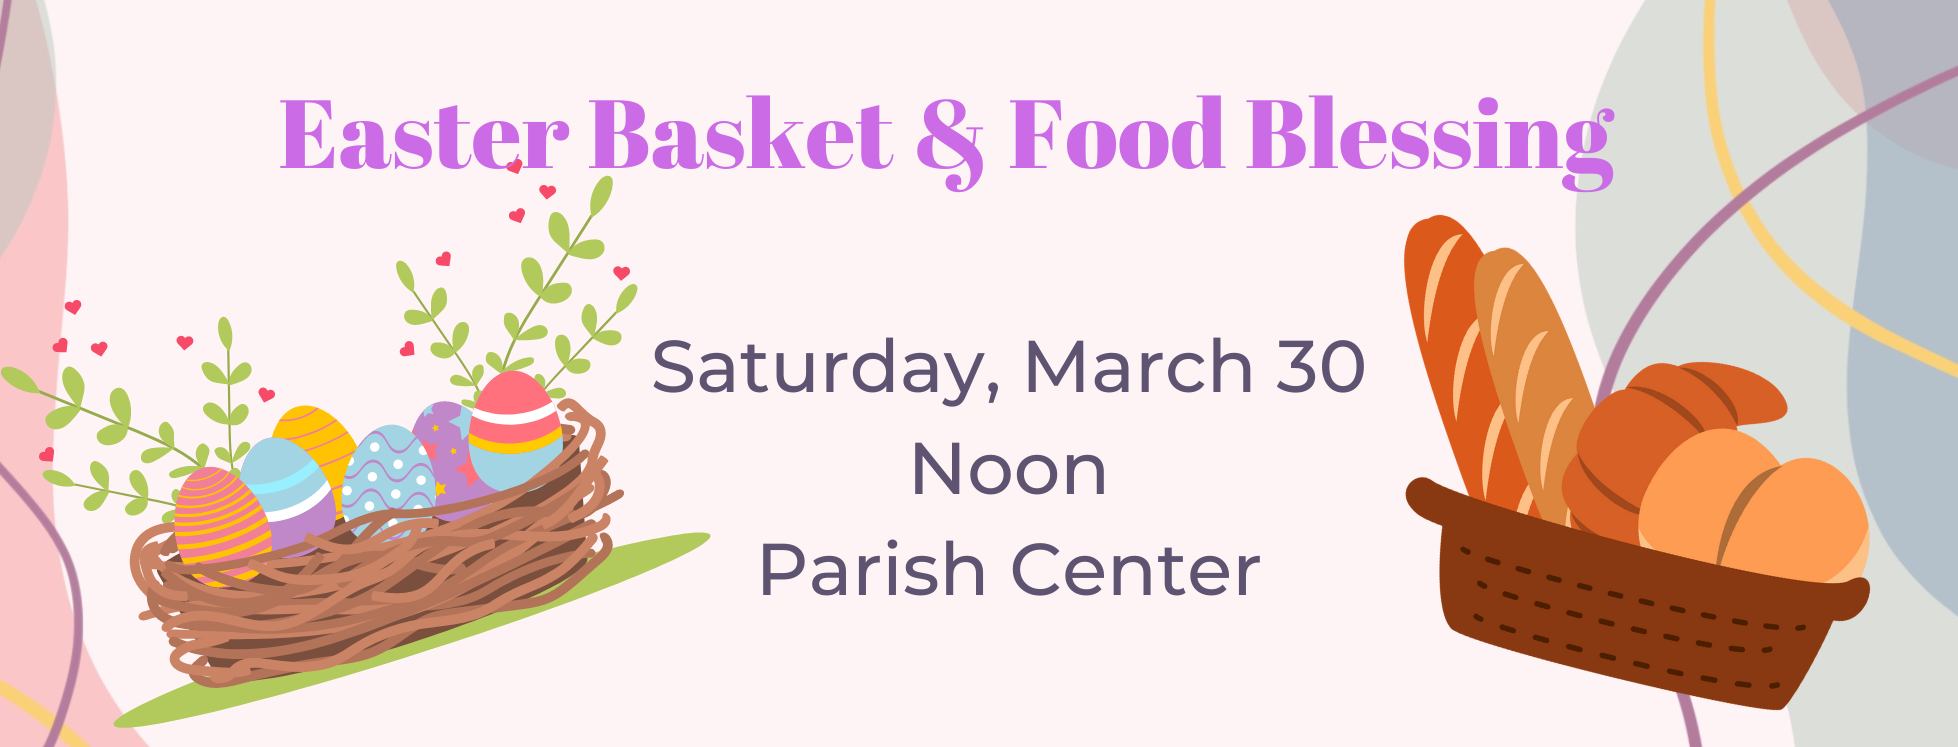 BAN Easter Basket & Food Blessing